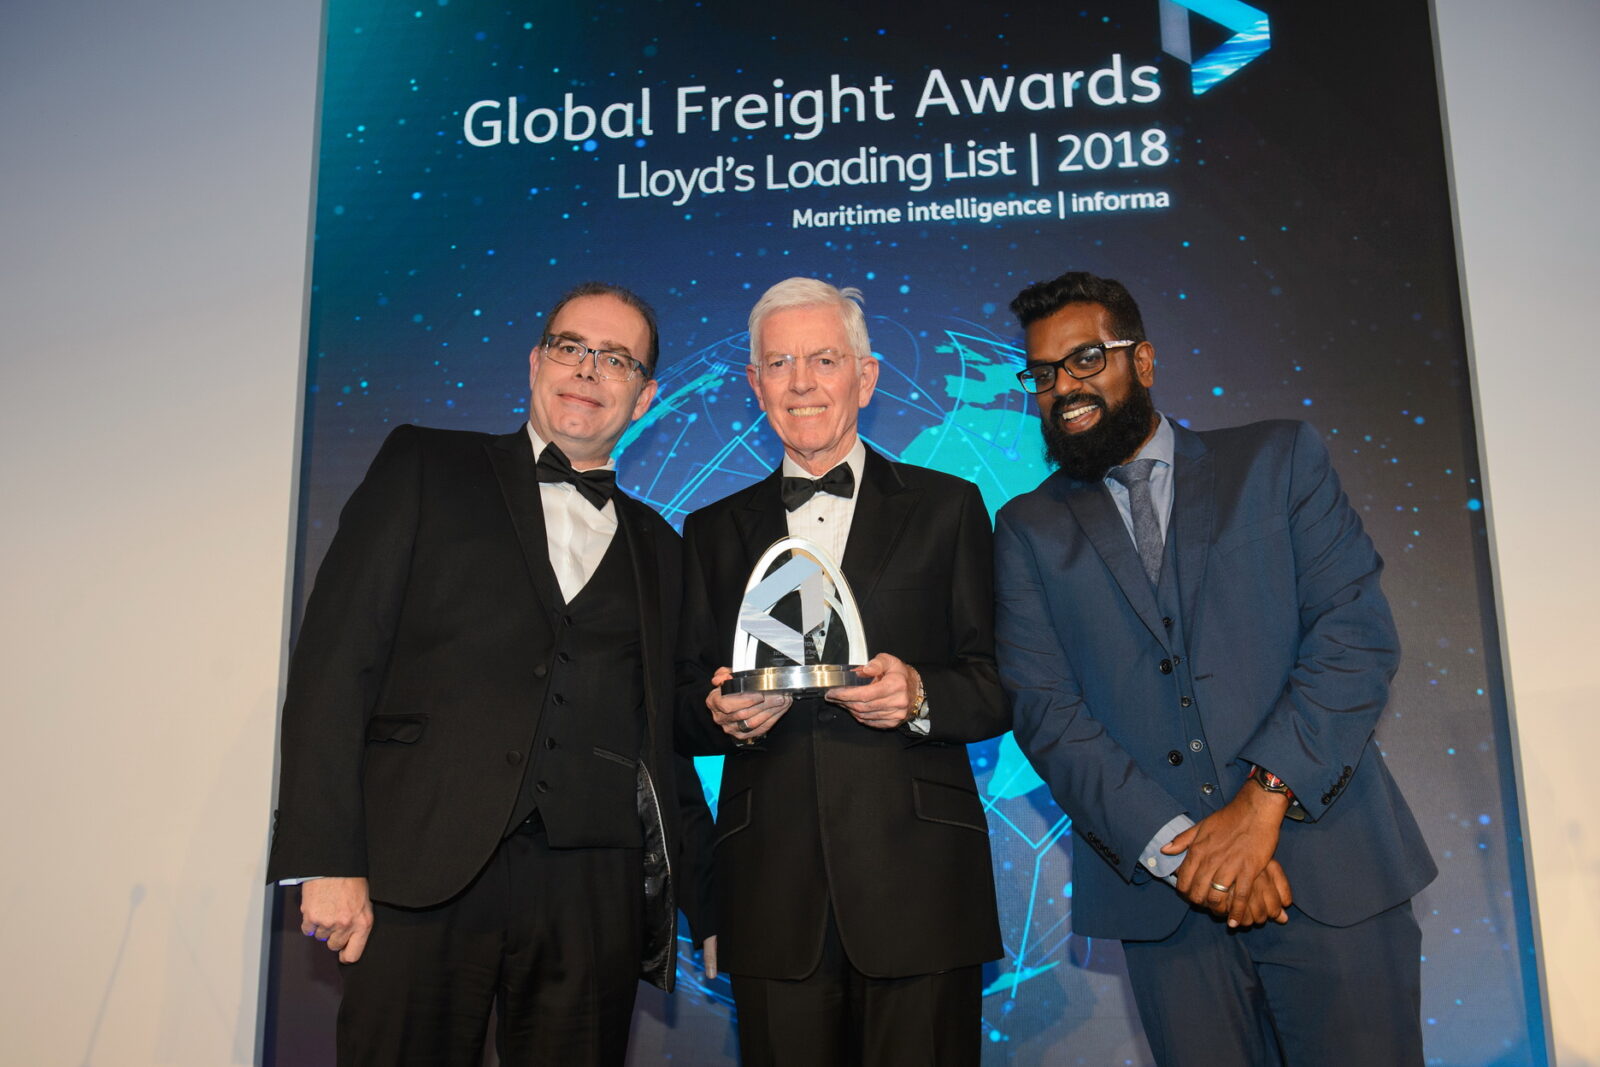 da sinistra verso destra: Scott Reeves, Direttore di NMT International Shipping Ltd., Roy Postlethwaite, Amministratore Delegato di Grimaldi Agencies UK Ltd., Romesh Ranganathan, comico, attore e presentatore dei Global Freight Awards 2018.